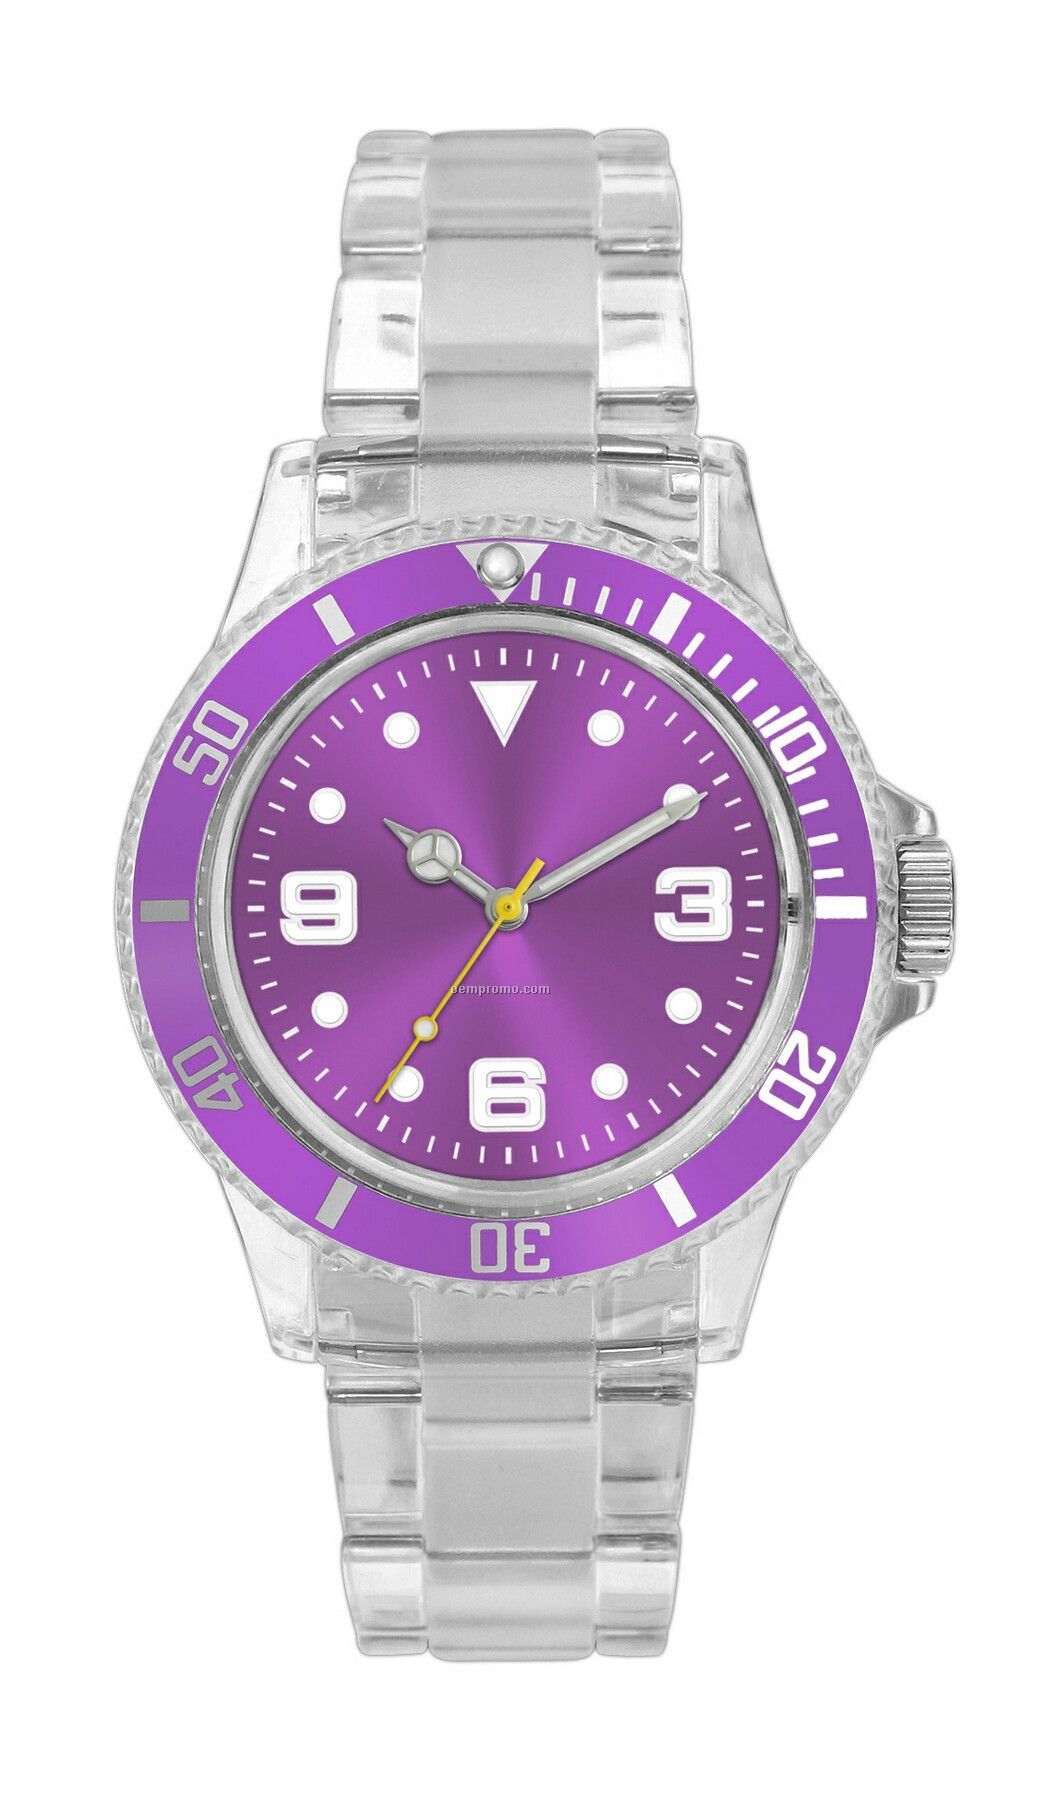 Pedre Polar Watch W/ Purple Bezel